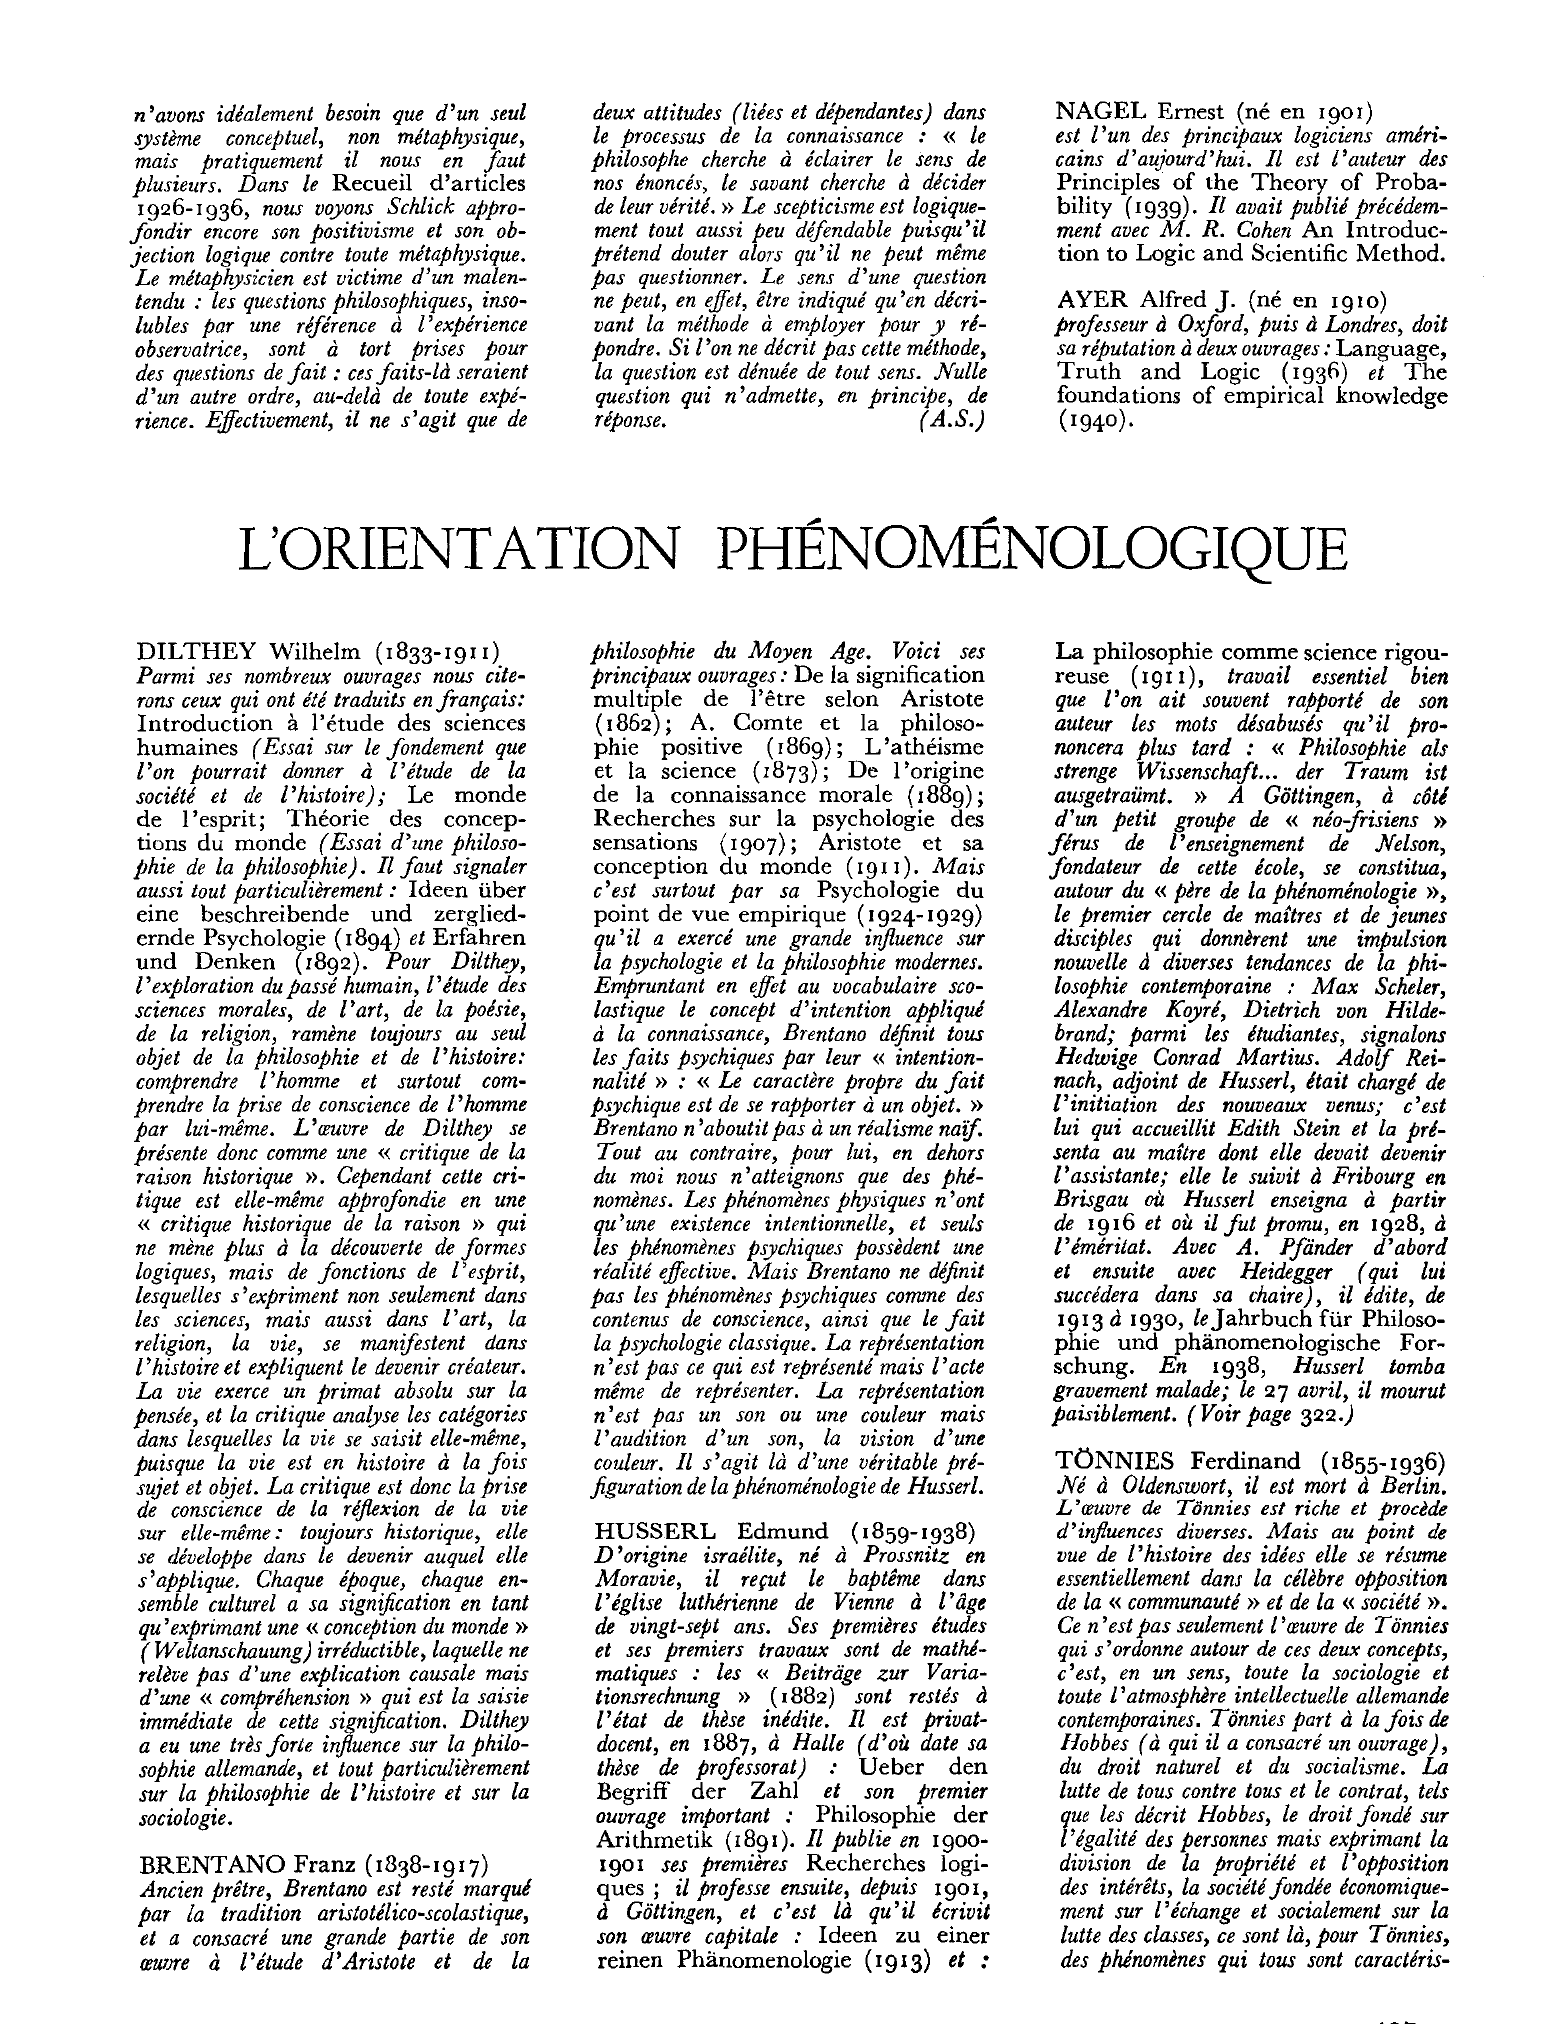 Prévisualisation du document une hiérarchie, distinguant les relations et les termes sur lesquels elles portent (Ueber Gegenstânde hôherer Ordnung, 1899; Ueber die Annahmen,
1902).